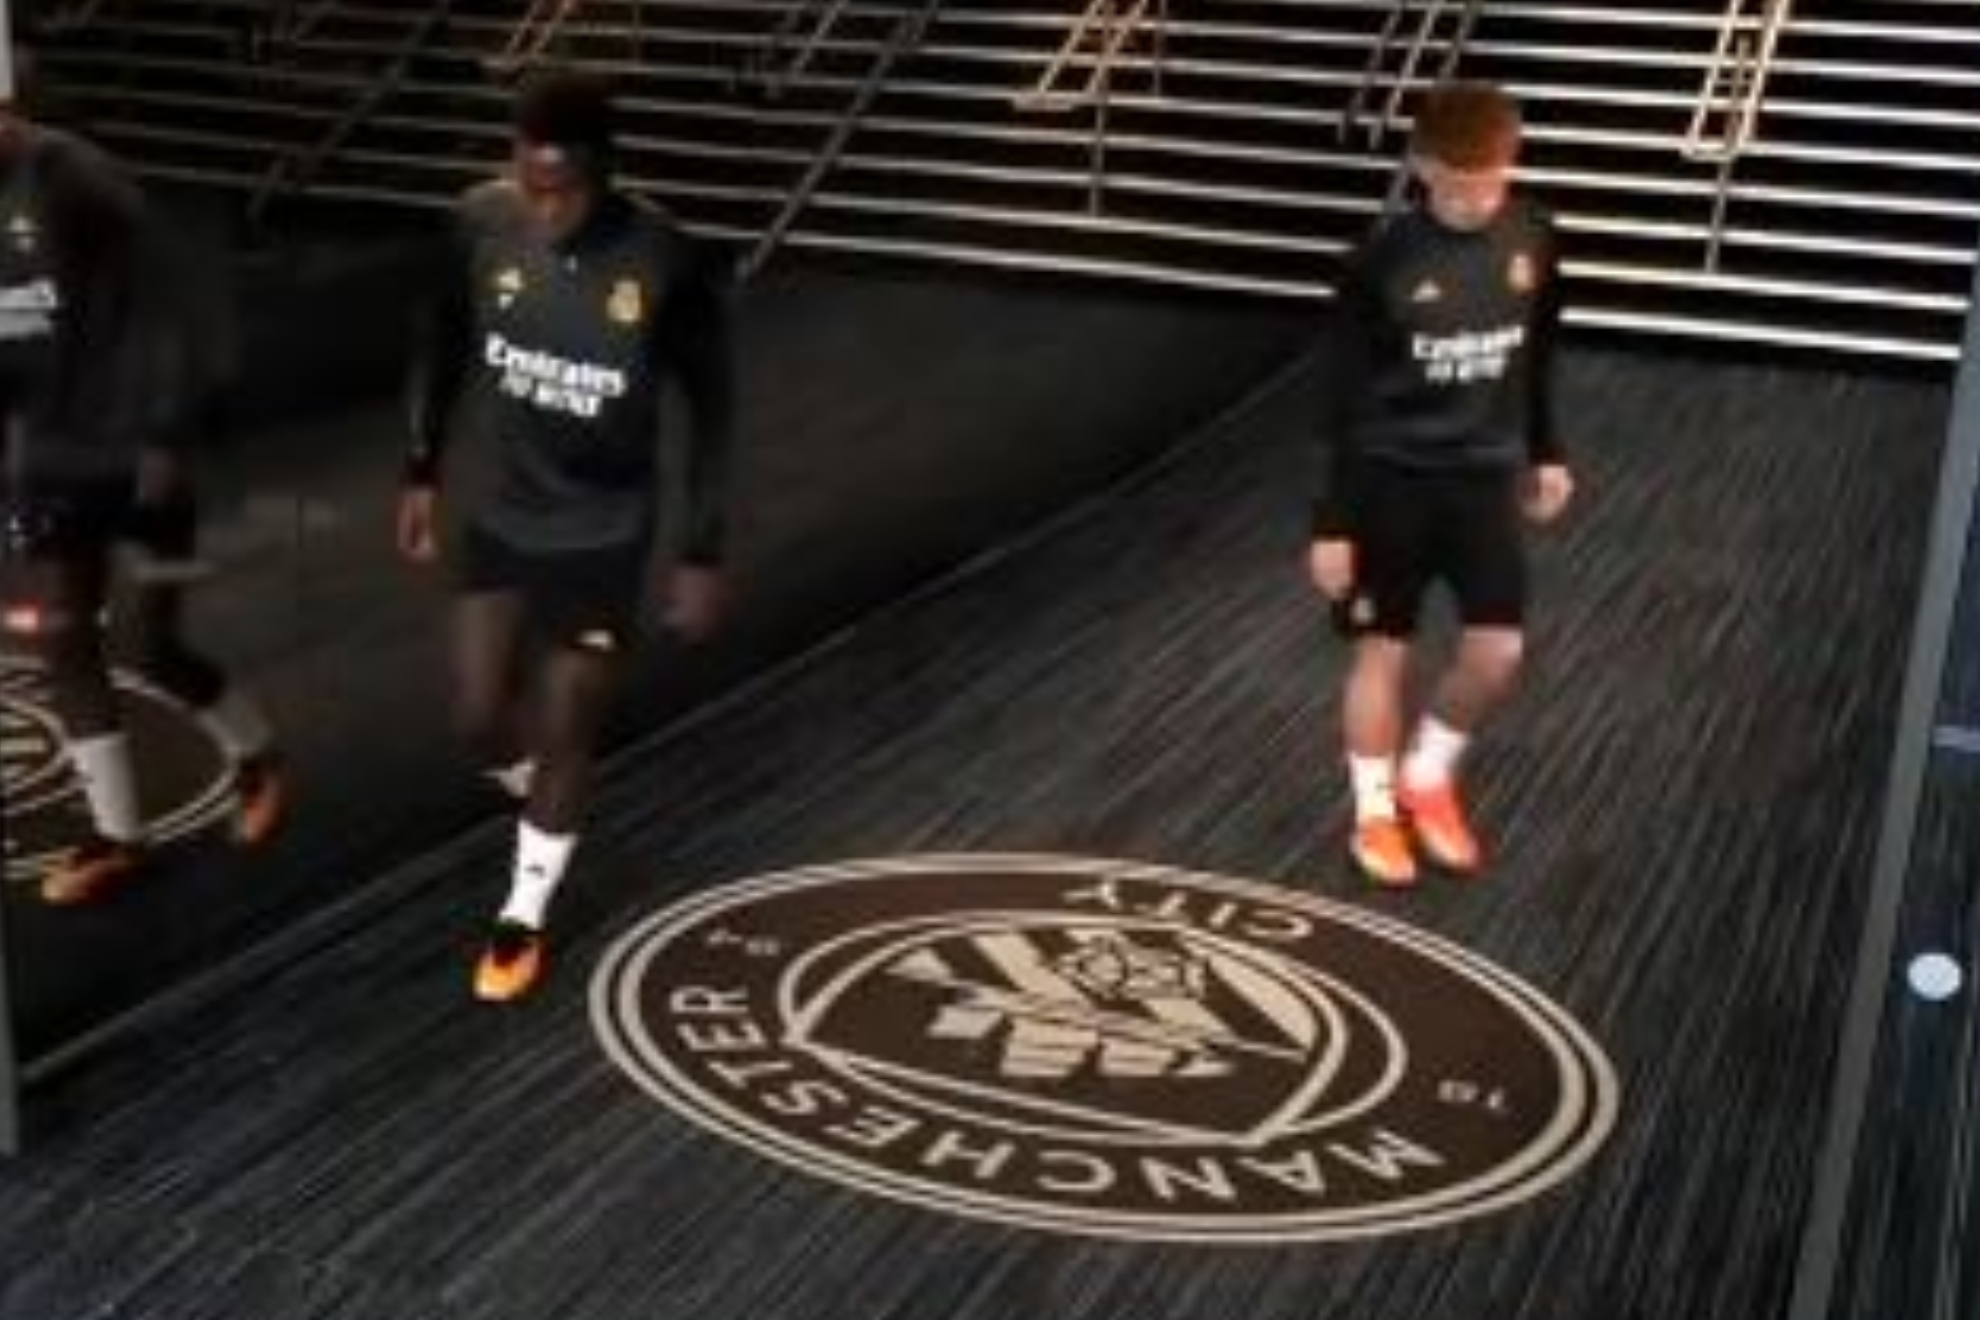 Vini Jr. y De Len esquivan el escudo del Manchester City en el tnel de vestuarios del Etihad